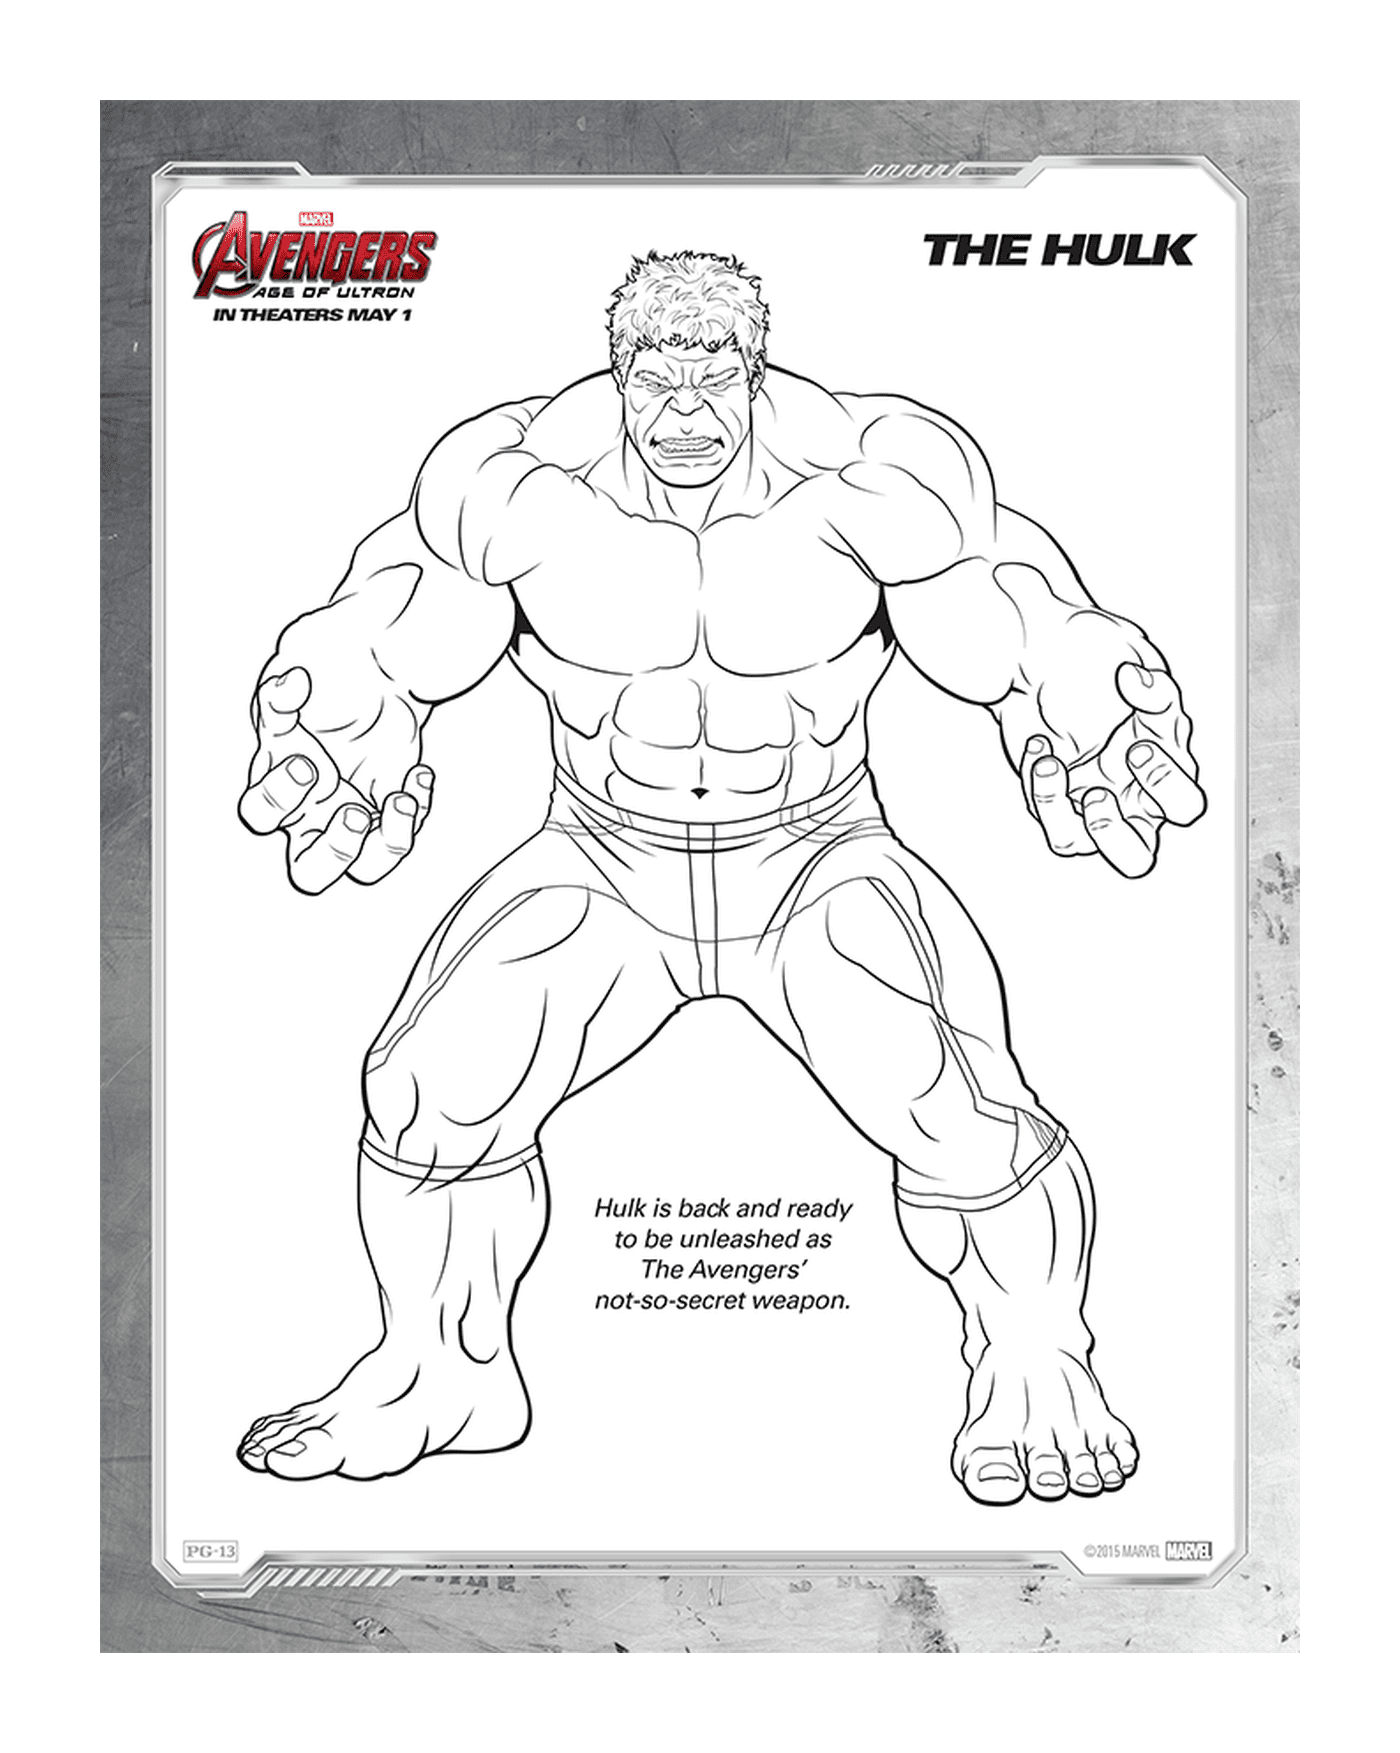  Imagen de un adulto, Hulk 